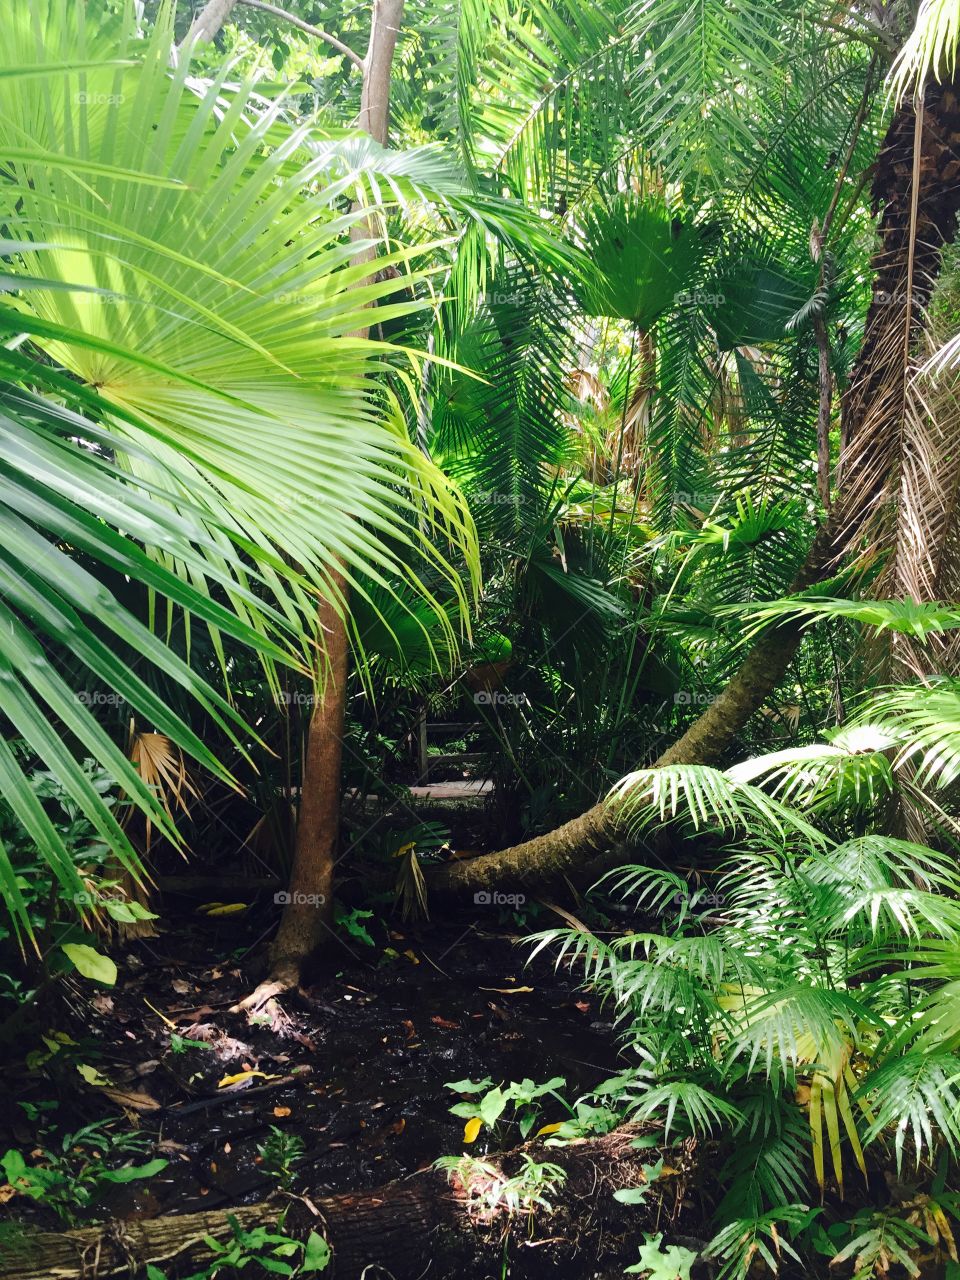 Jungle gardens